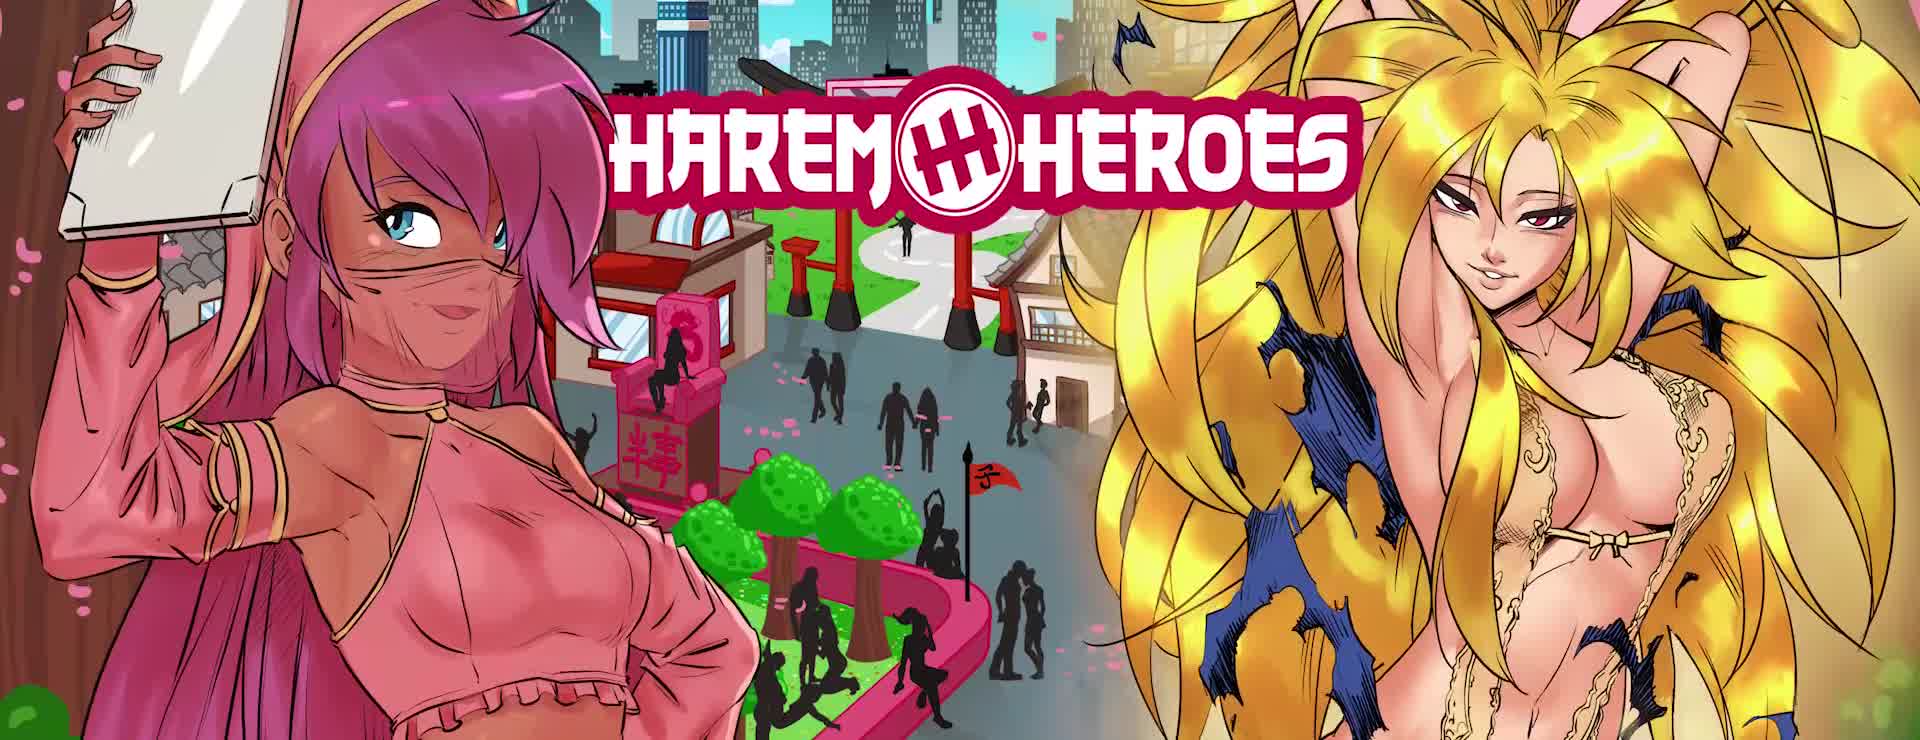 Harem heros